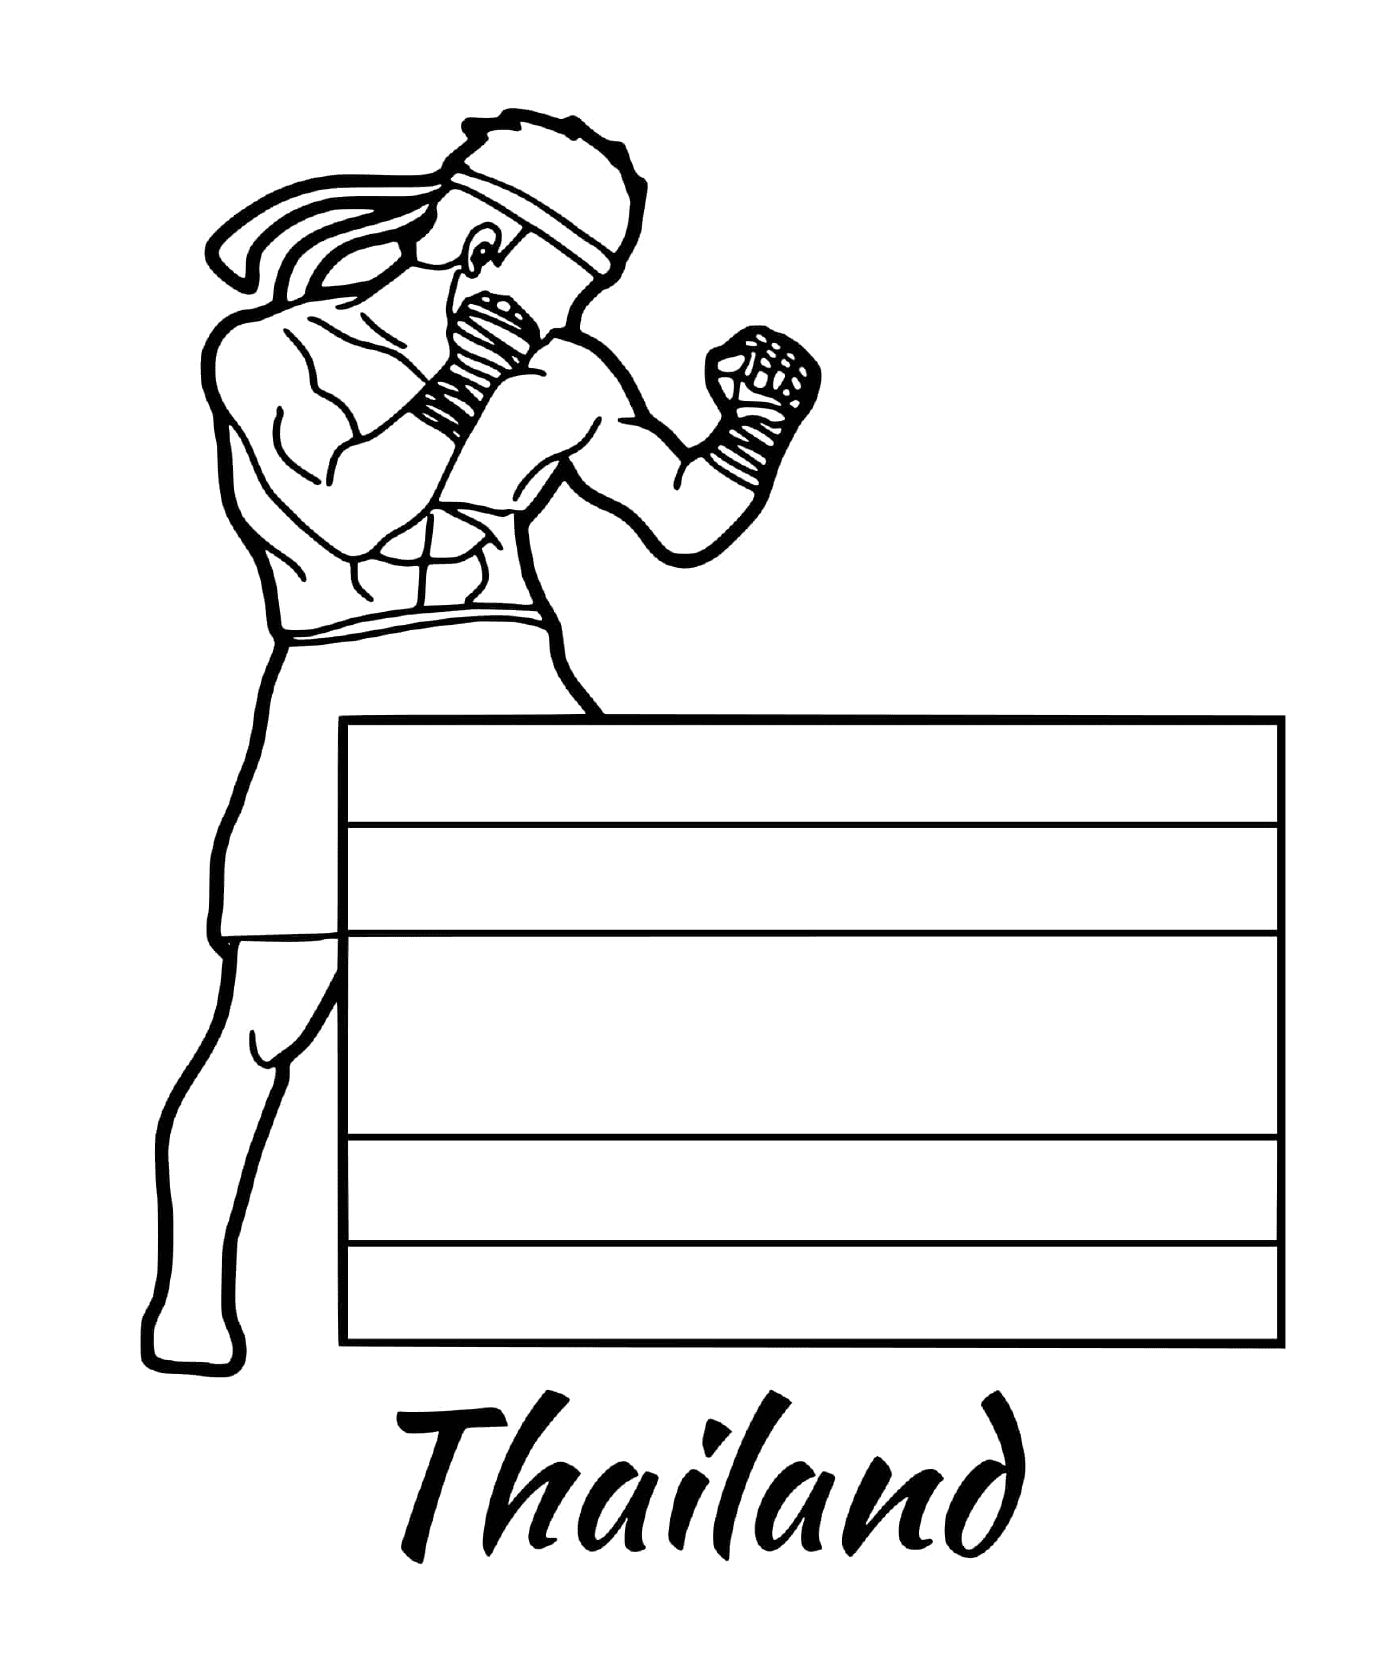  Bandiera della Thailandia, Muay Thai 